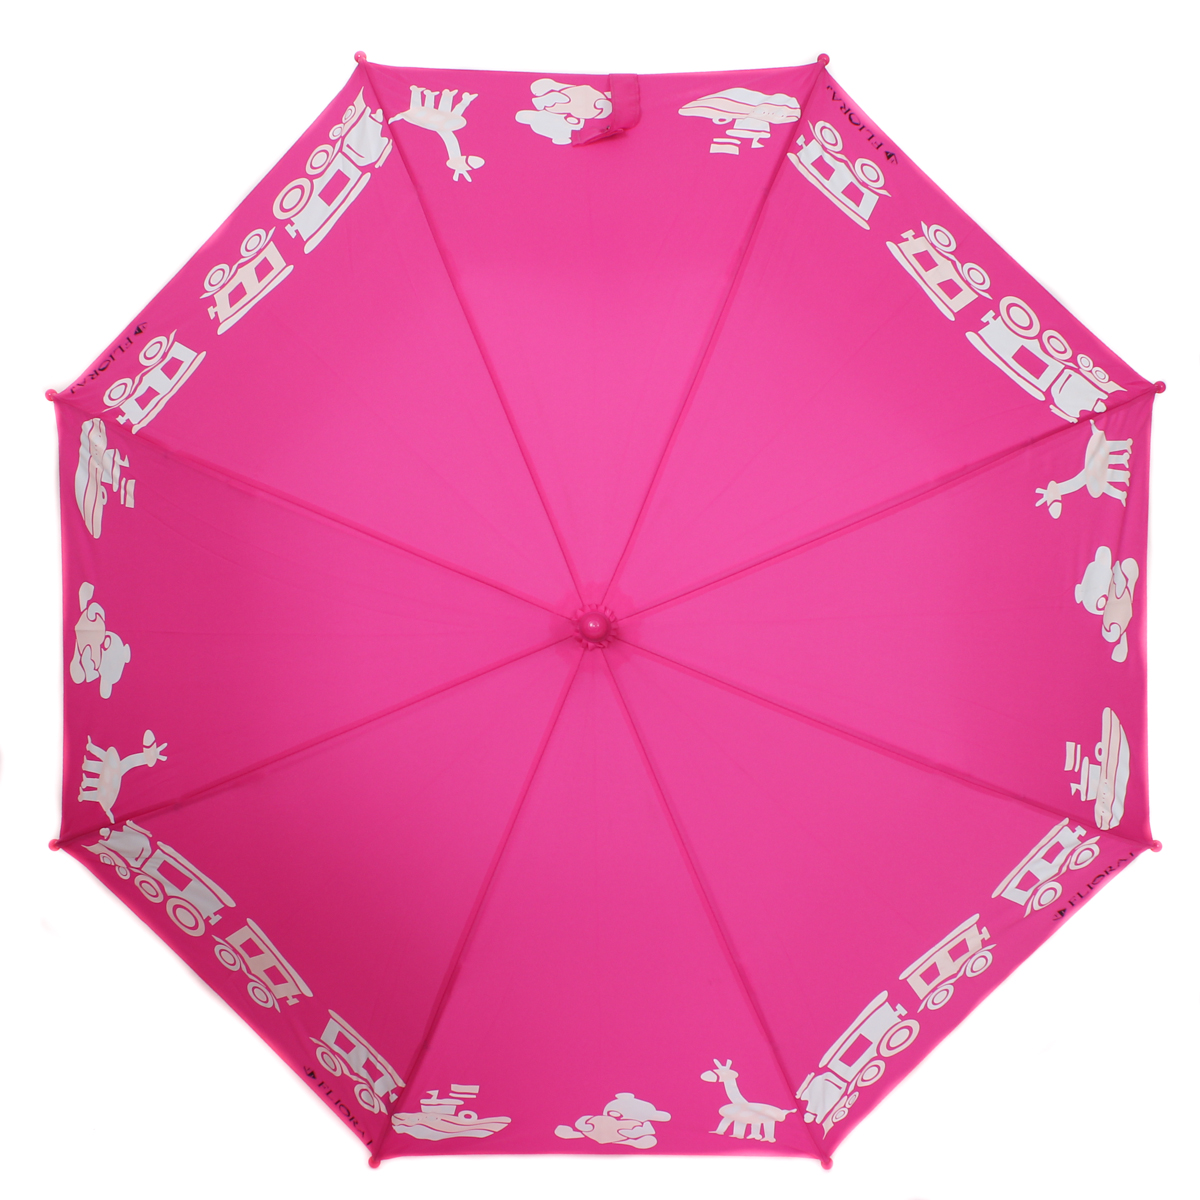 Зонт детский Flioraj, механика, трость, цвет: ярко-розовый. Flioraj 051210